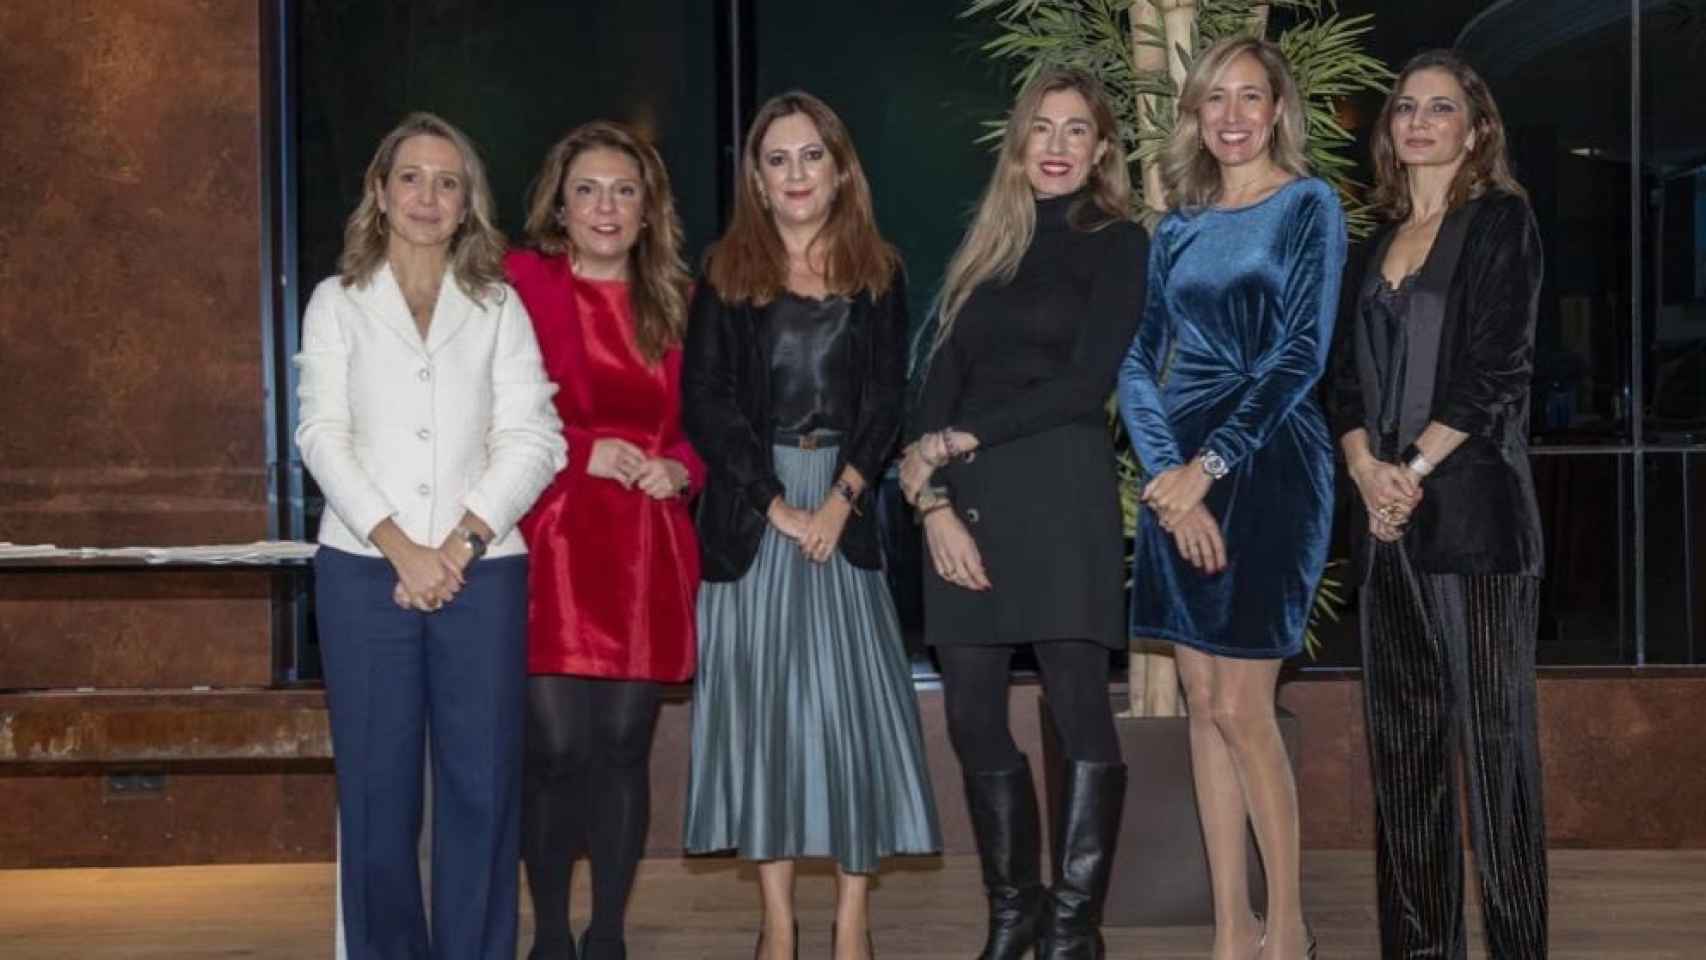 Clara Cerdán,  Marlen Estévez, Fátima Rodríguez, Ana Martínez, Sara Molina, María Pardo de Vera